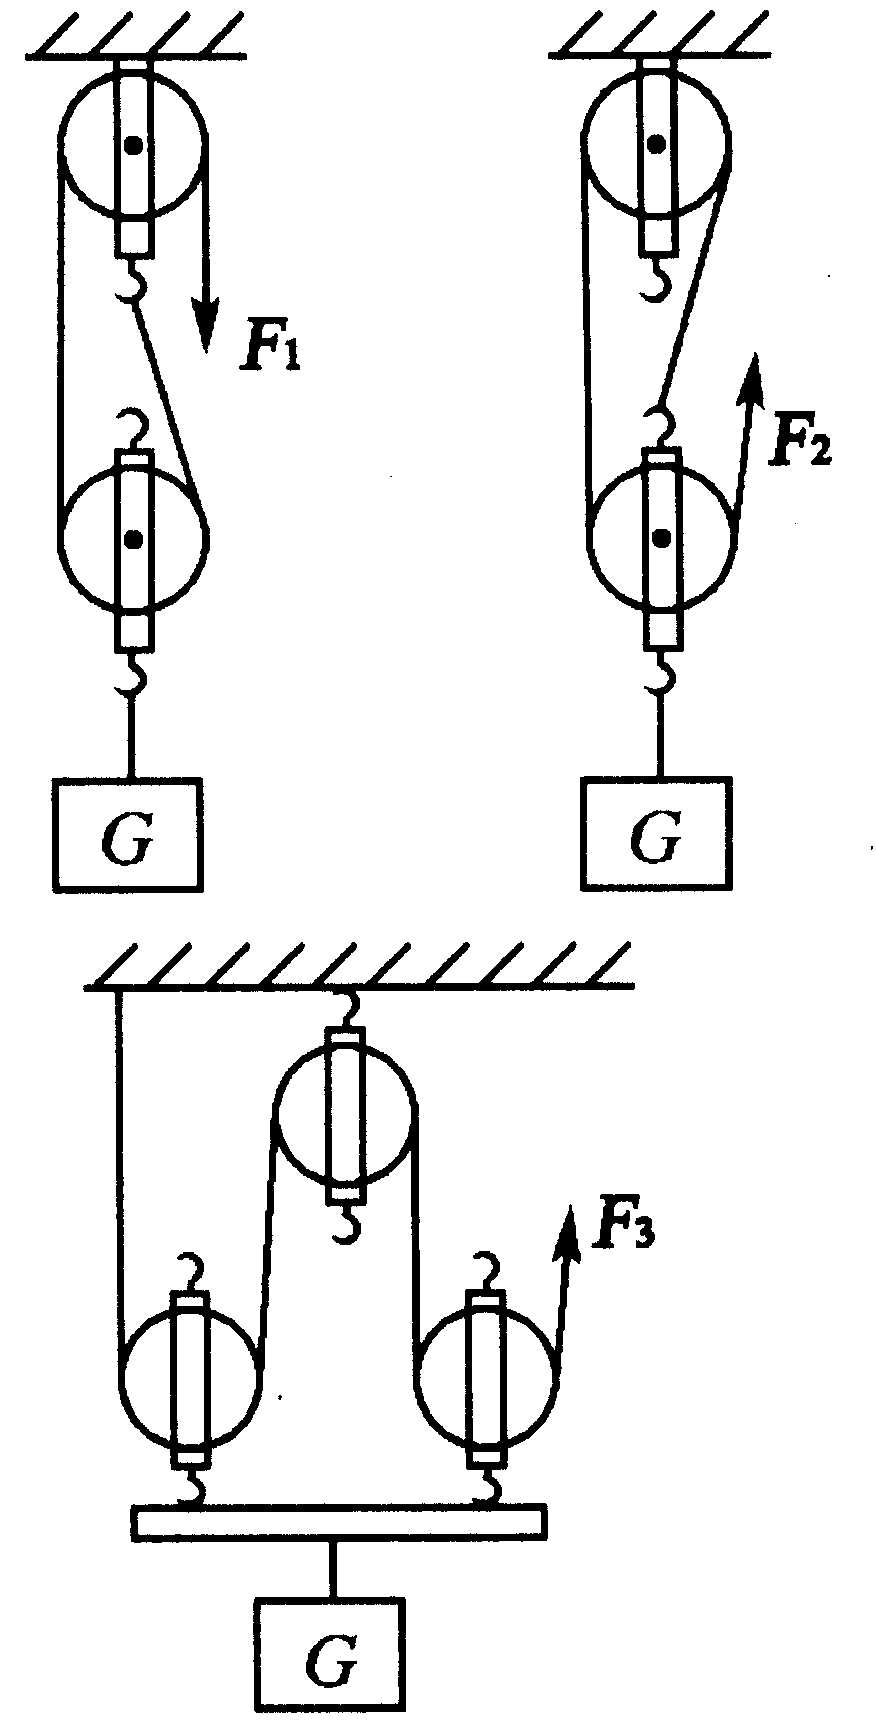 如图所示,用滑轮组提起重g的物体,绳子自由端拉力为f,重物以速度v匀速